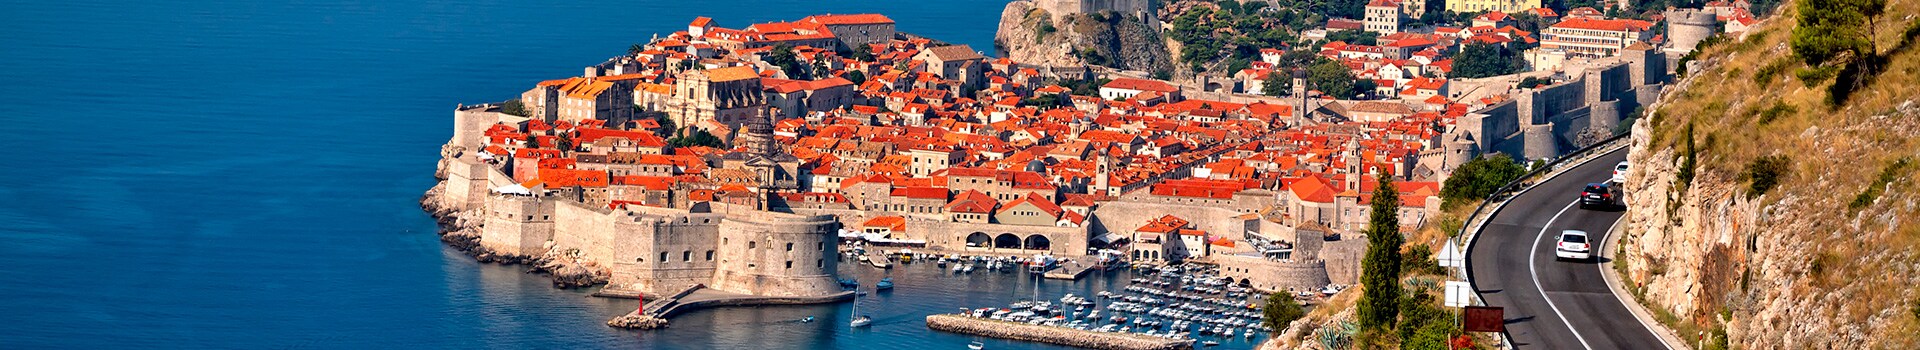 Bari - Dubrovnik